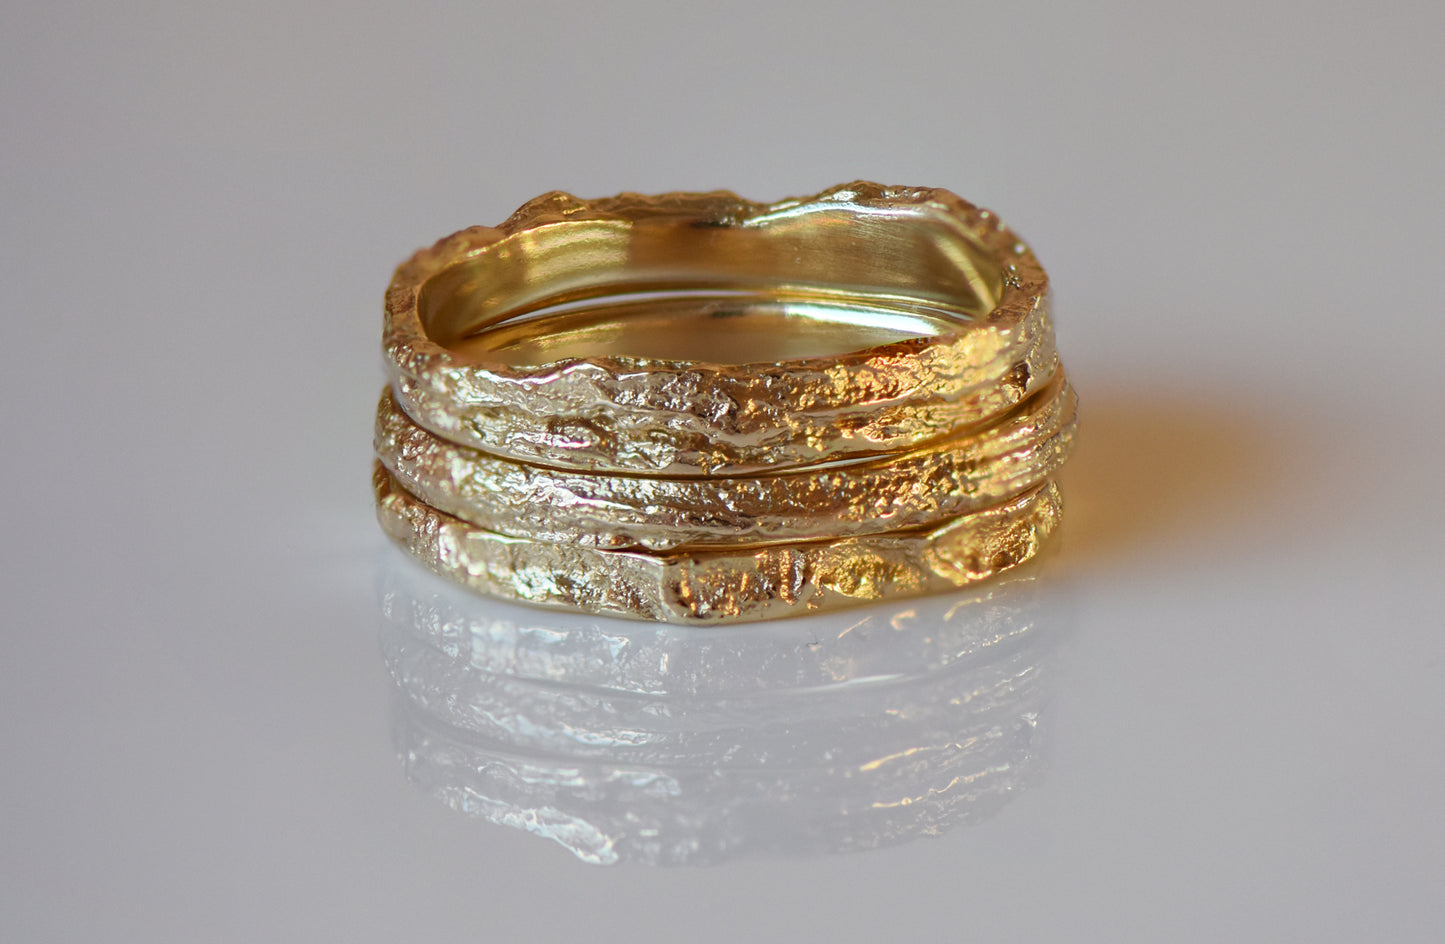 Skinny Oak Ring in 9ct Gold